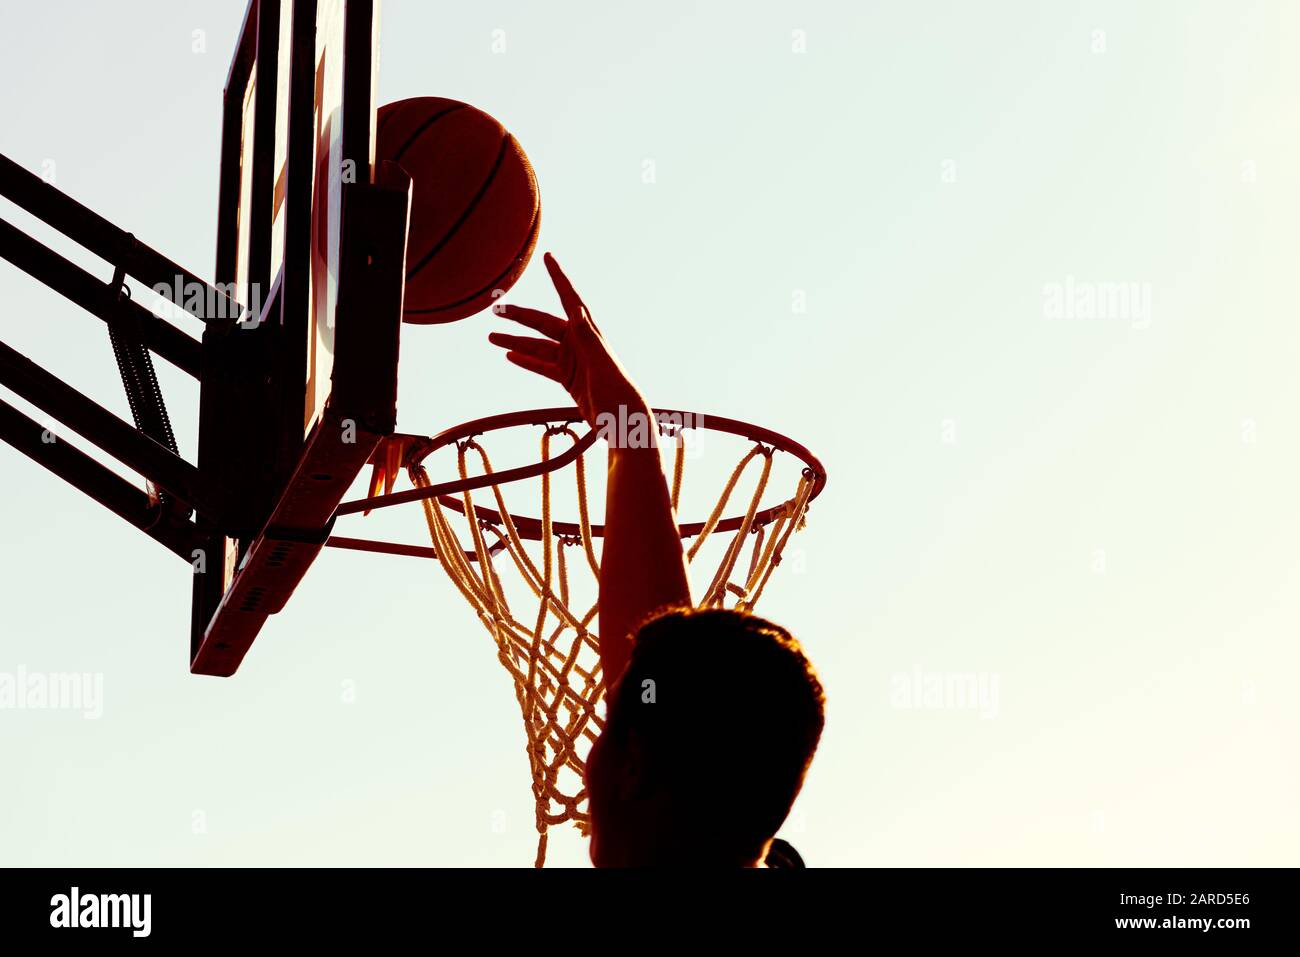 Il giovane giocatore di basket dalla silhouette sinua che salta in alto sul cerchio di basket raggiunge un punteggio con un dunk di volo al tramonto. Successo e obiettivo Foto Stock